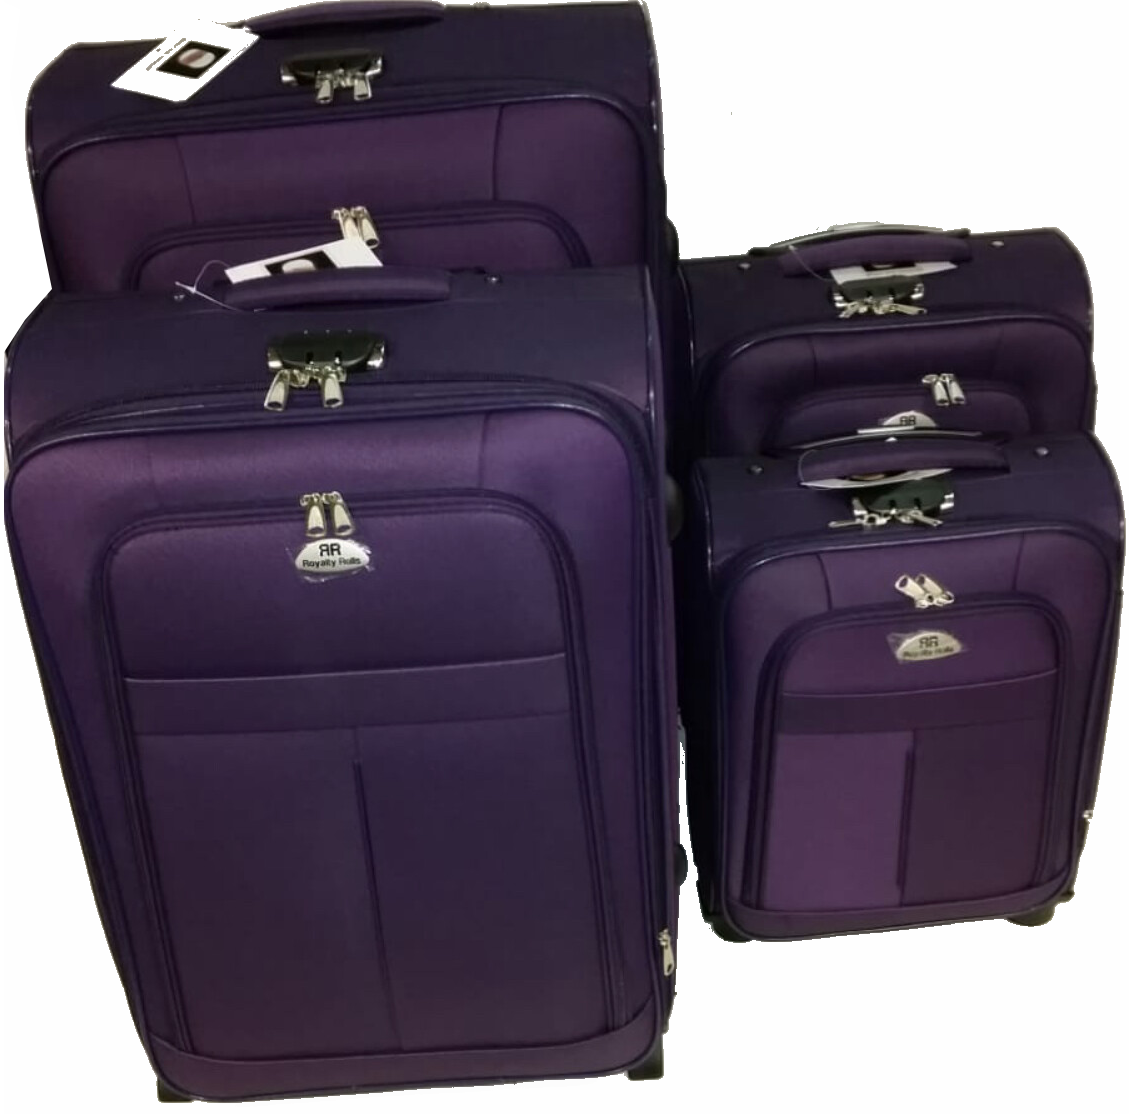 Dubai koffer set, 4 delig, 4 wiel (#629) Paars, 20, 24, 28, 32 inch